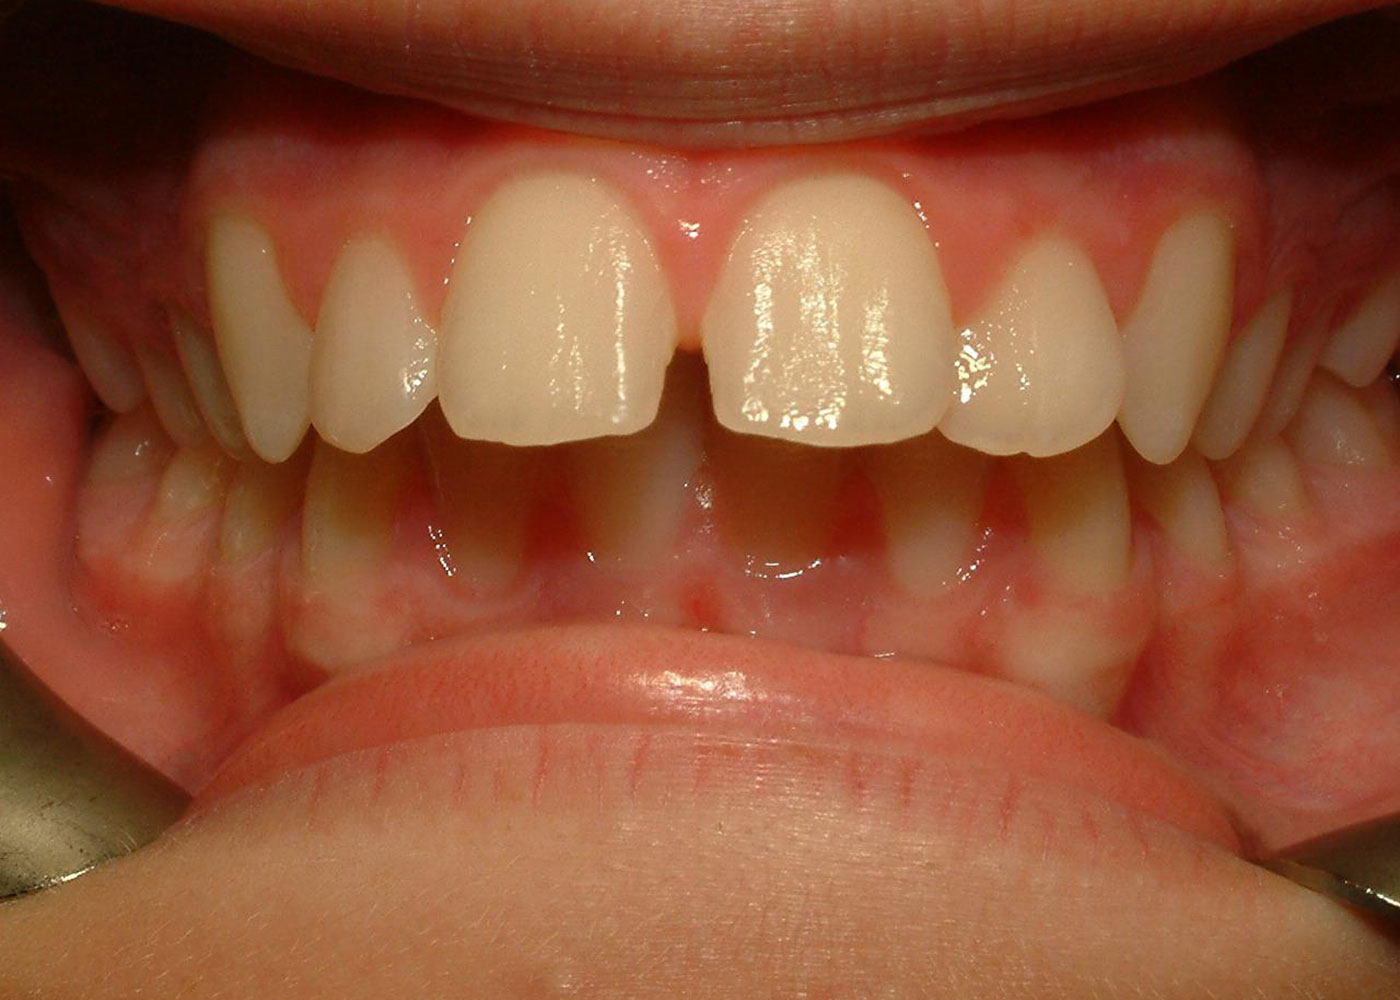 Before orthodontics